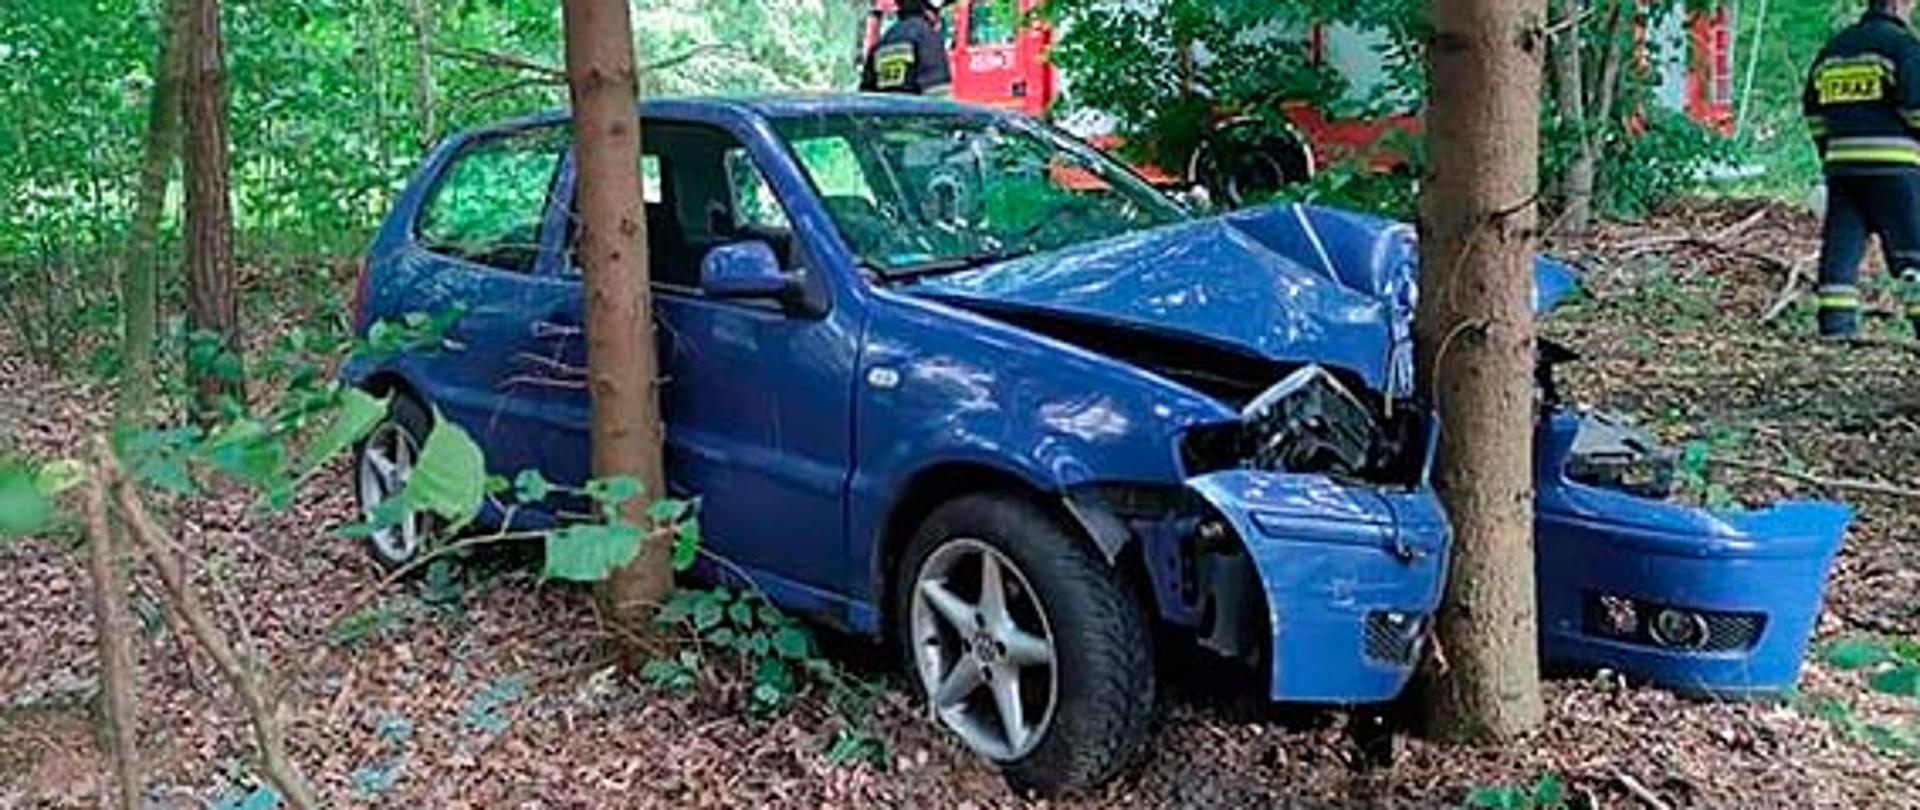 Niebieski pojazd rozbity na drzewie w lesie.